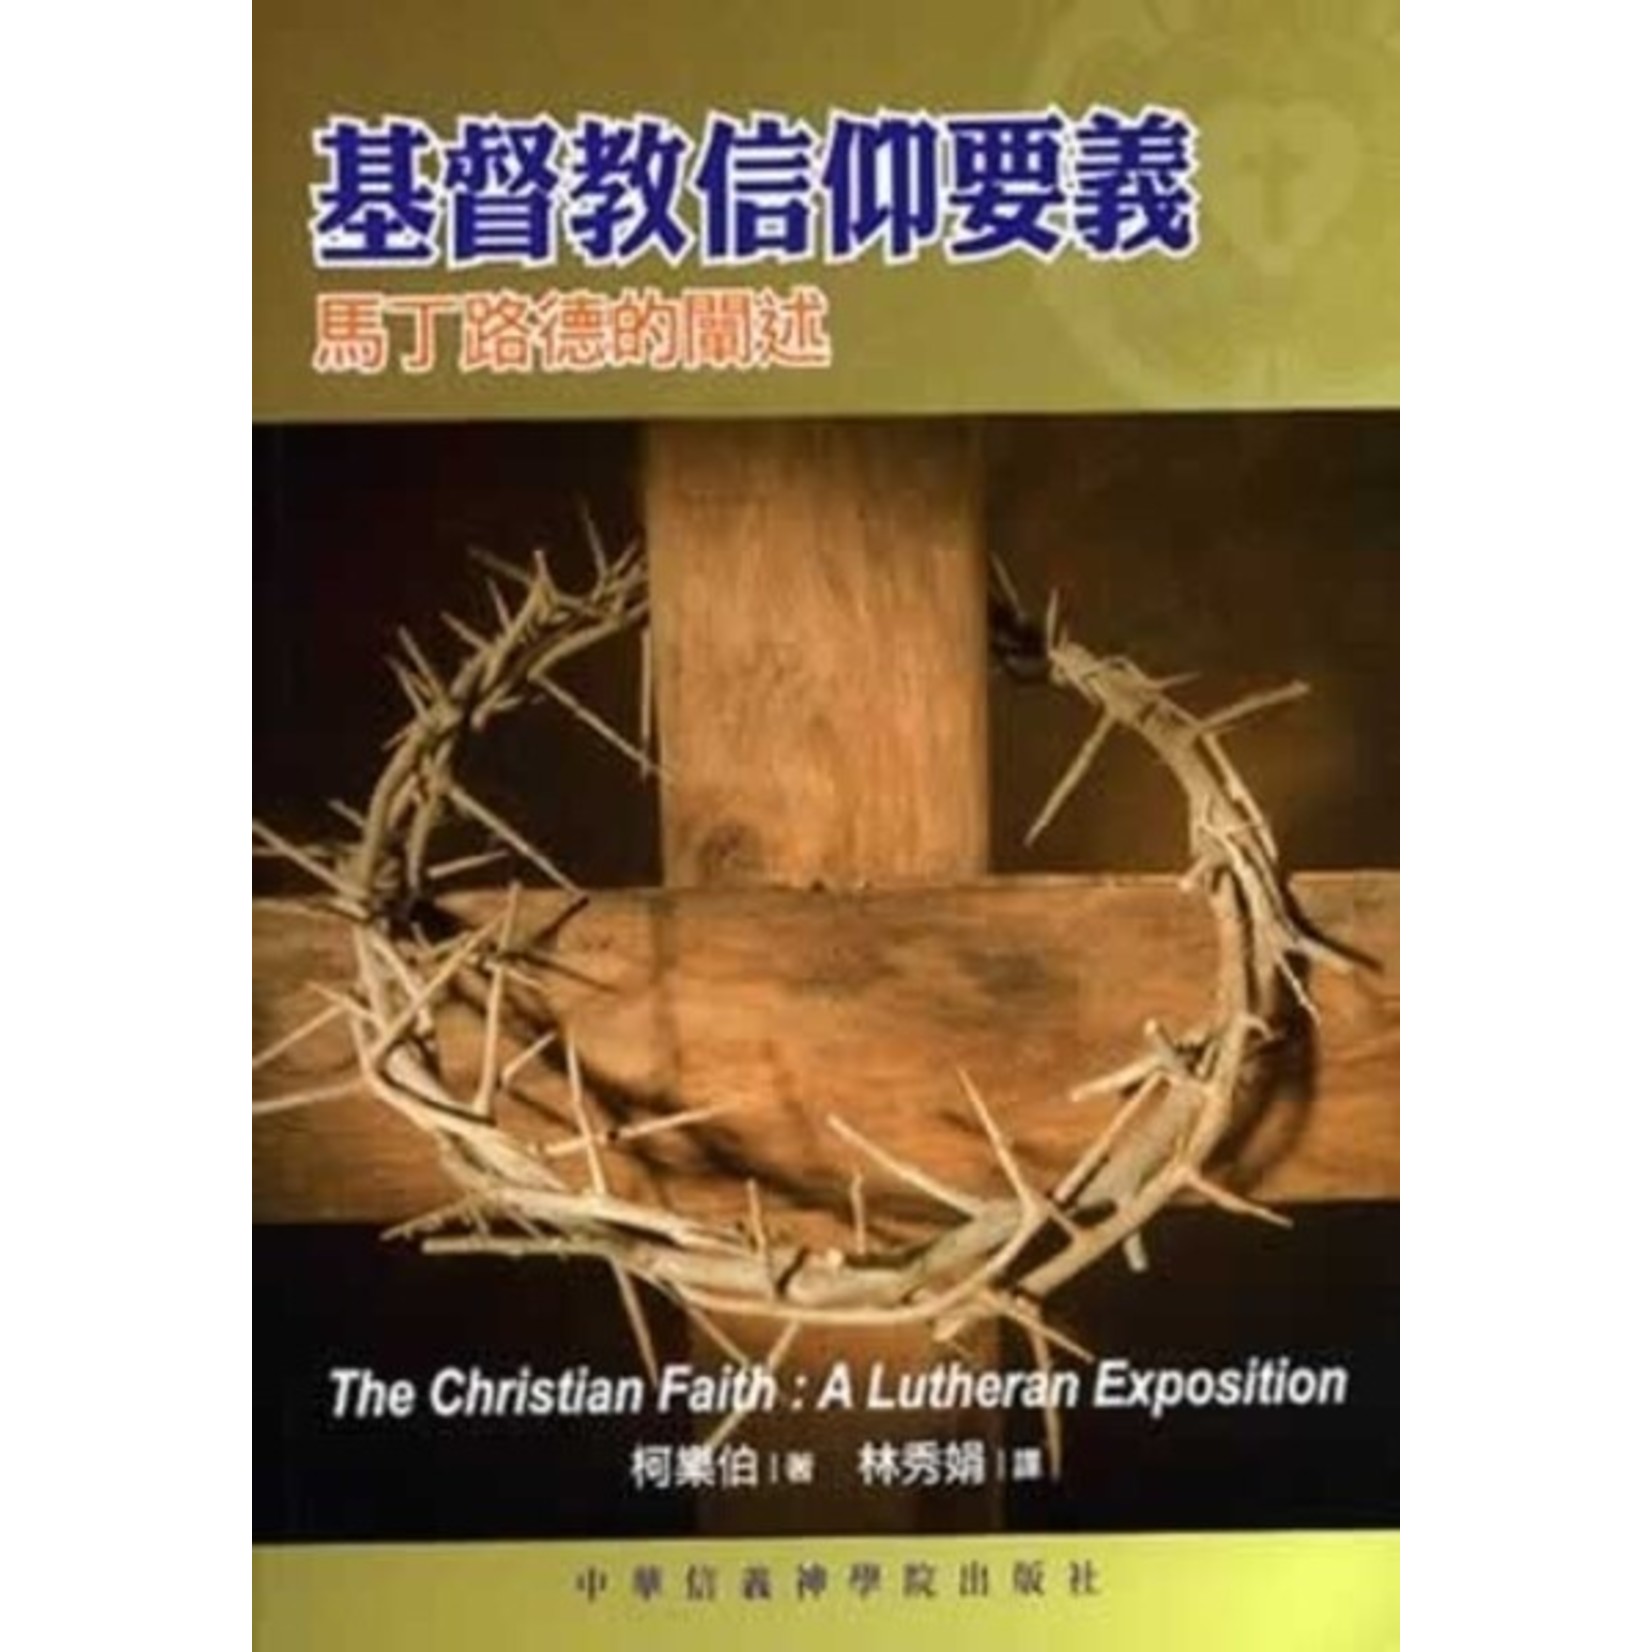 中華信義神學院 China Lutheran Seminary 基督教信仰要義：馬丁路德的闡述 | The Christian Faith: A Lutheran Exposition